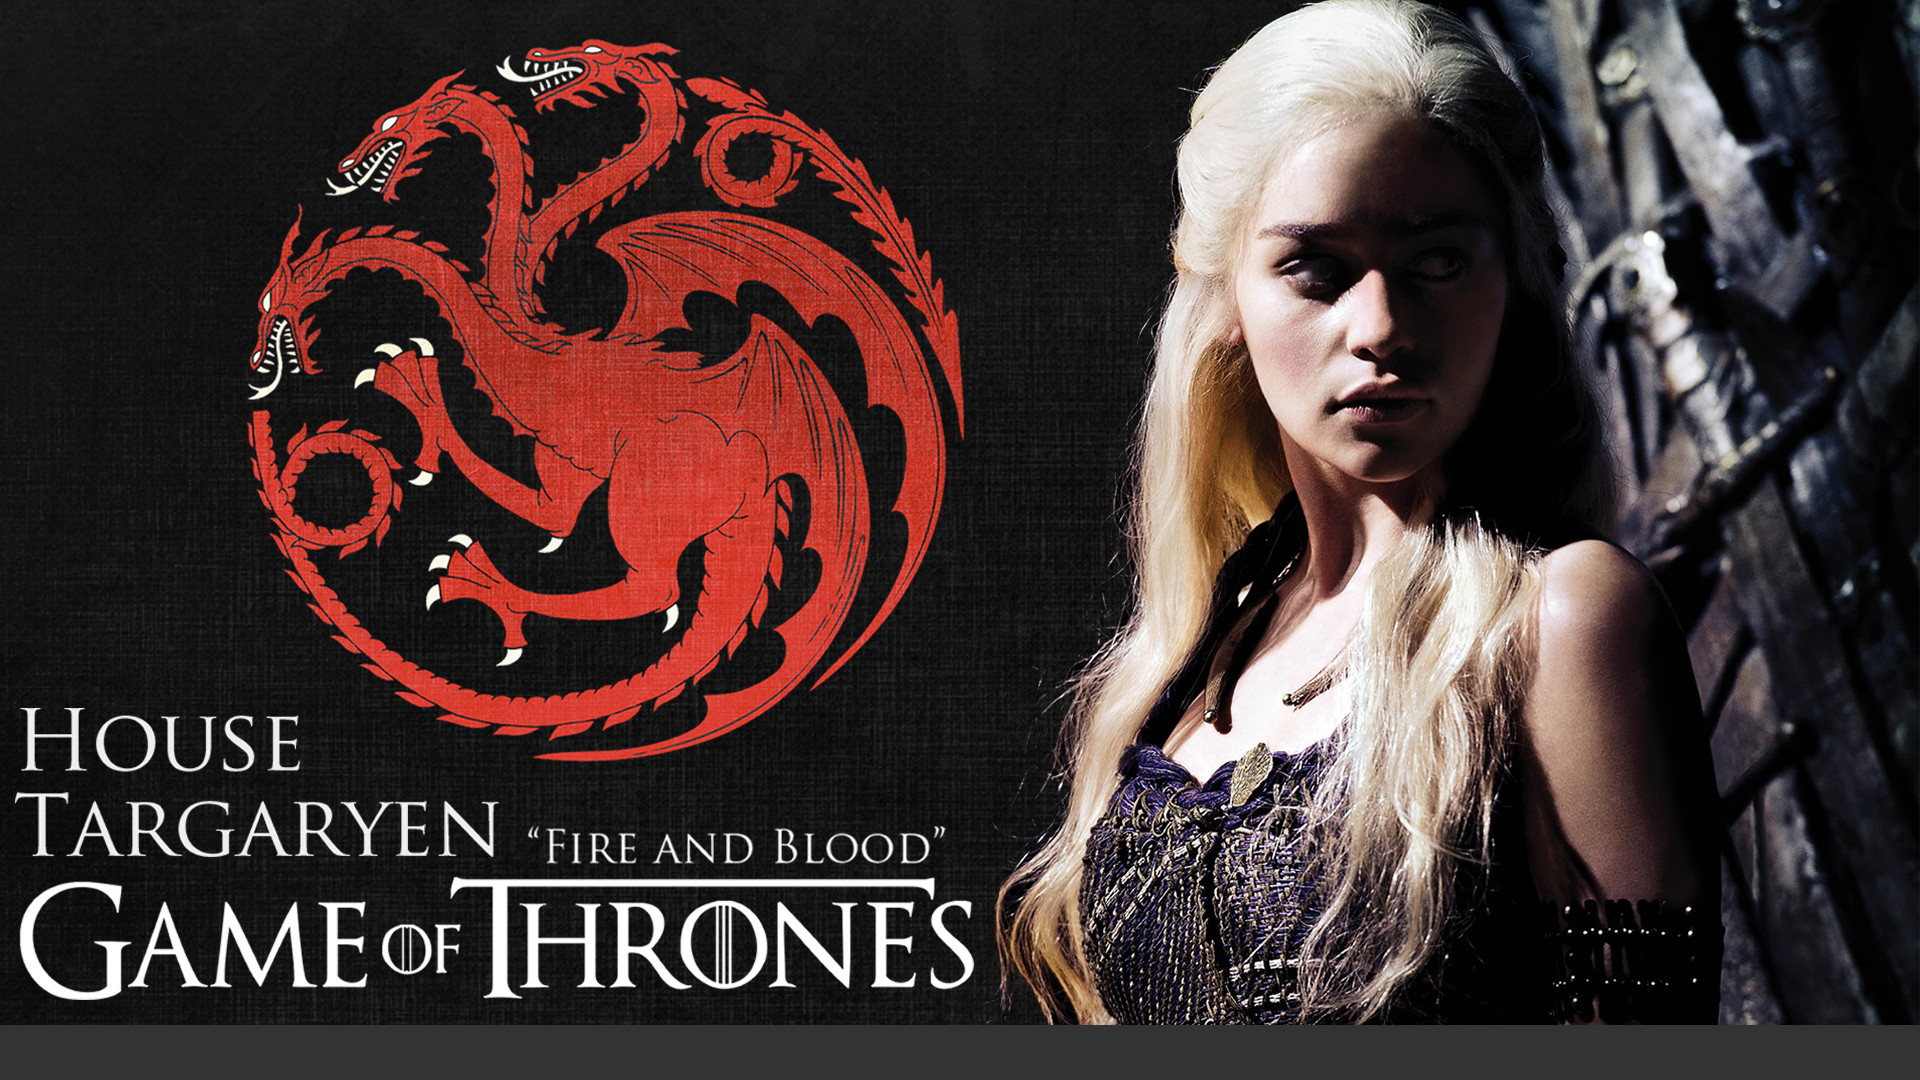 Daenerys Targaryen from Game of thrones Fanart Wallpaper 4k Ultra HD ID4687